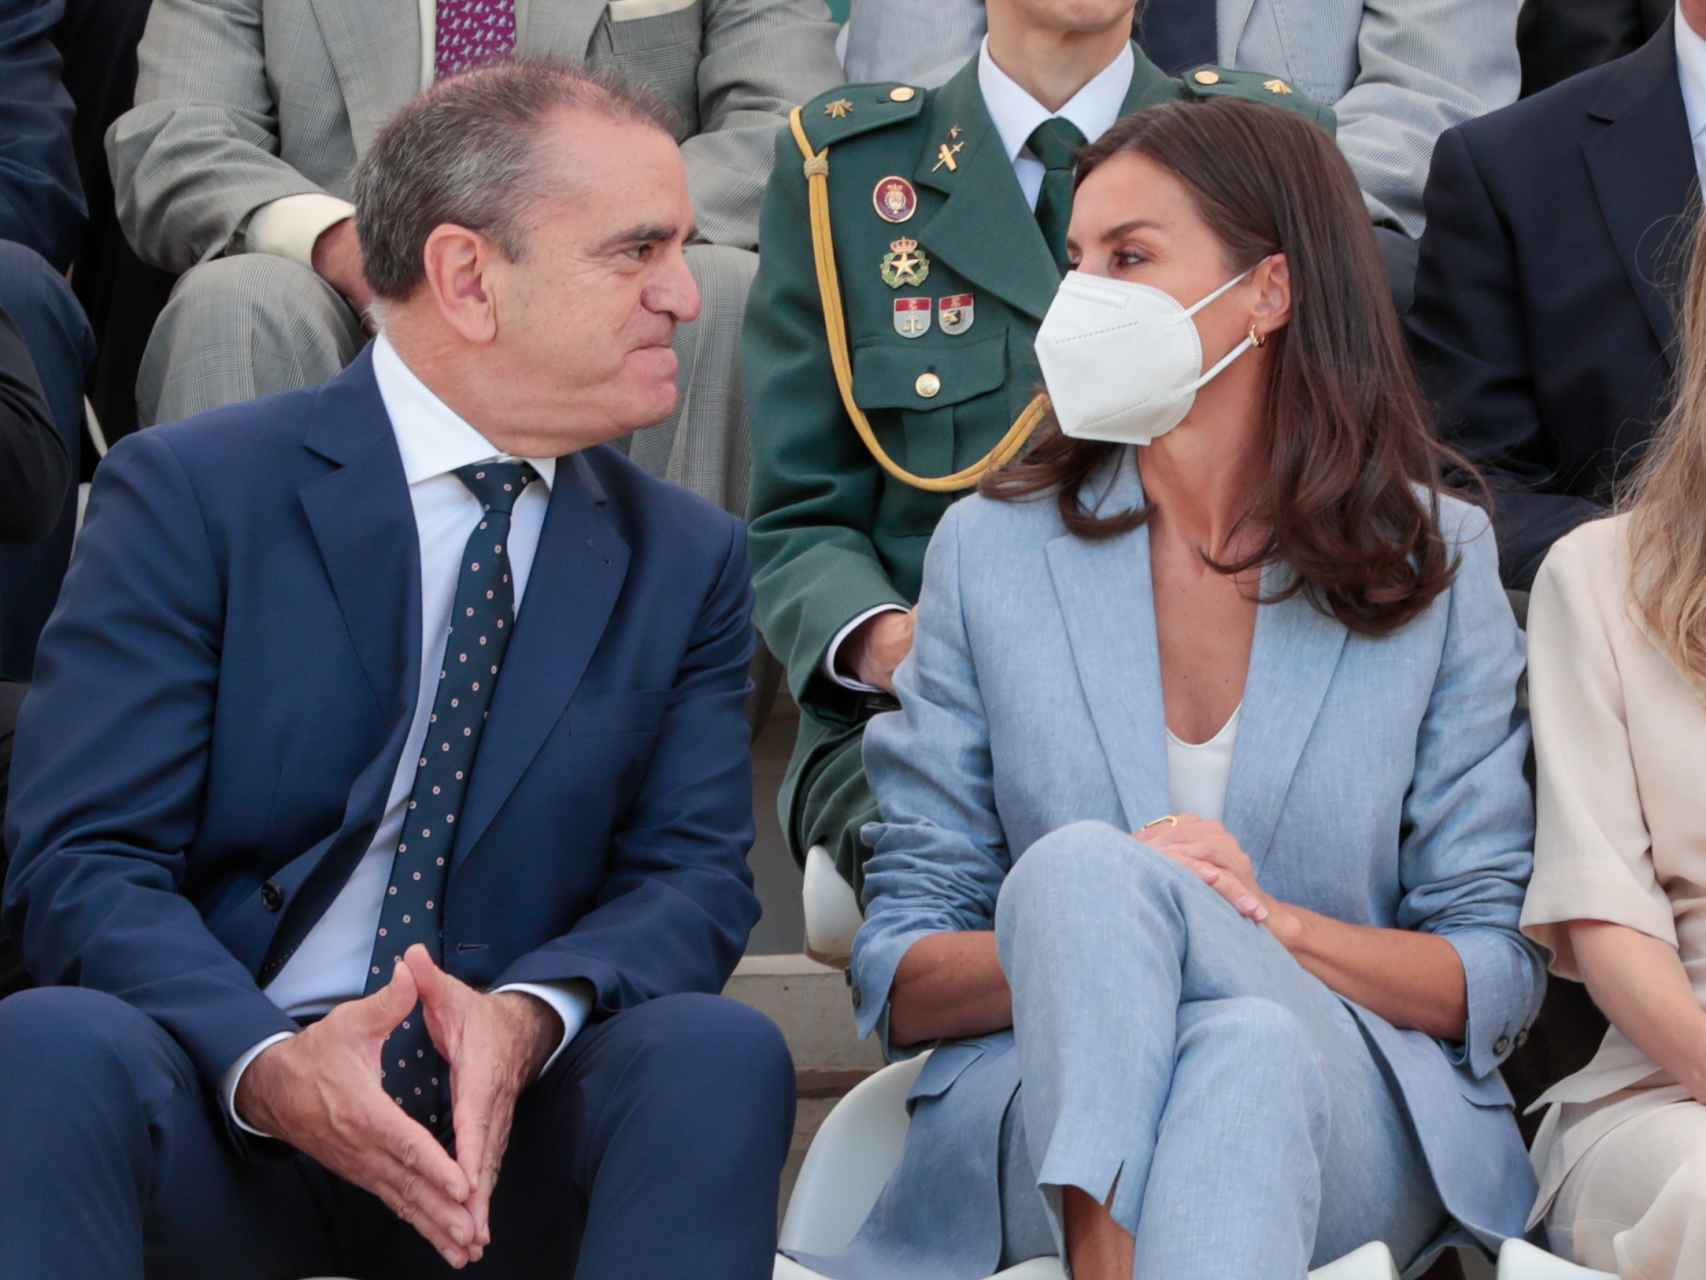 La reina Letizia ha llevado mascarilla por precaución, según fuentes de Casa Real.